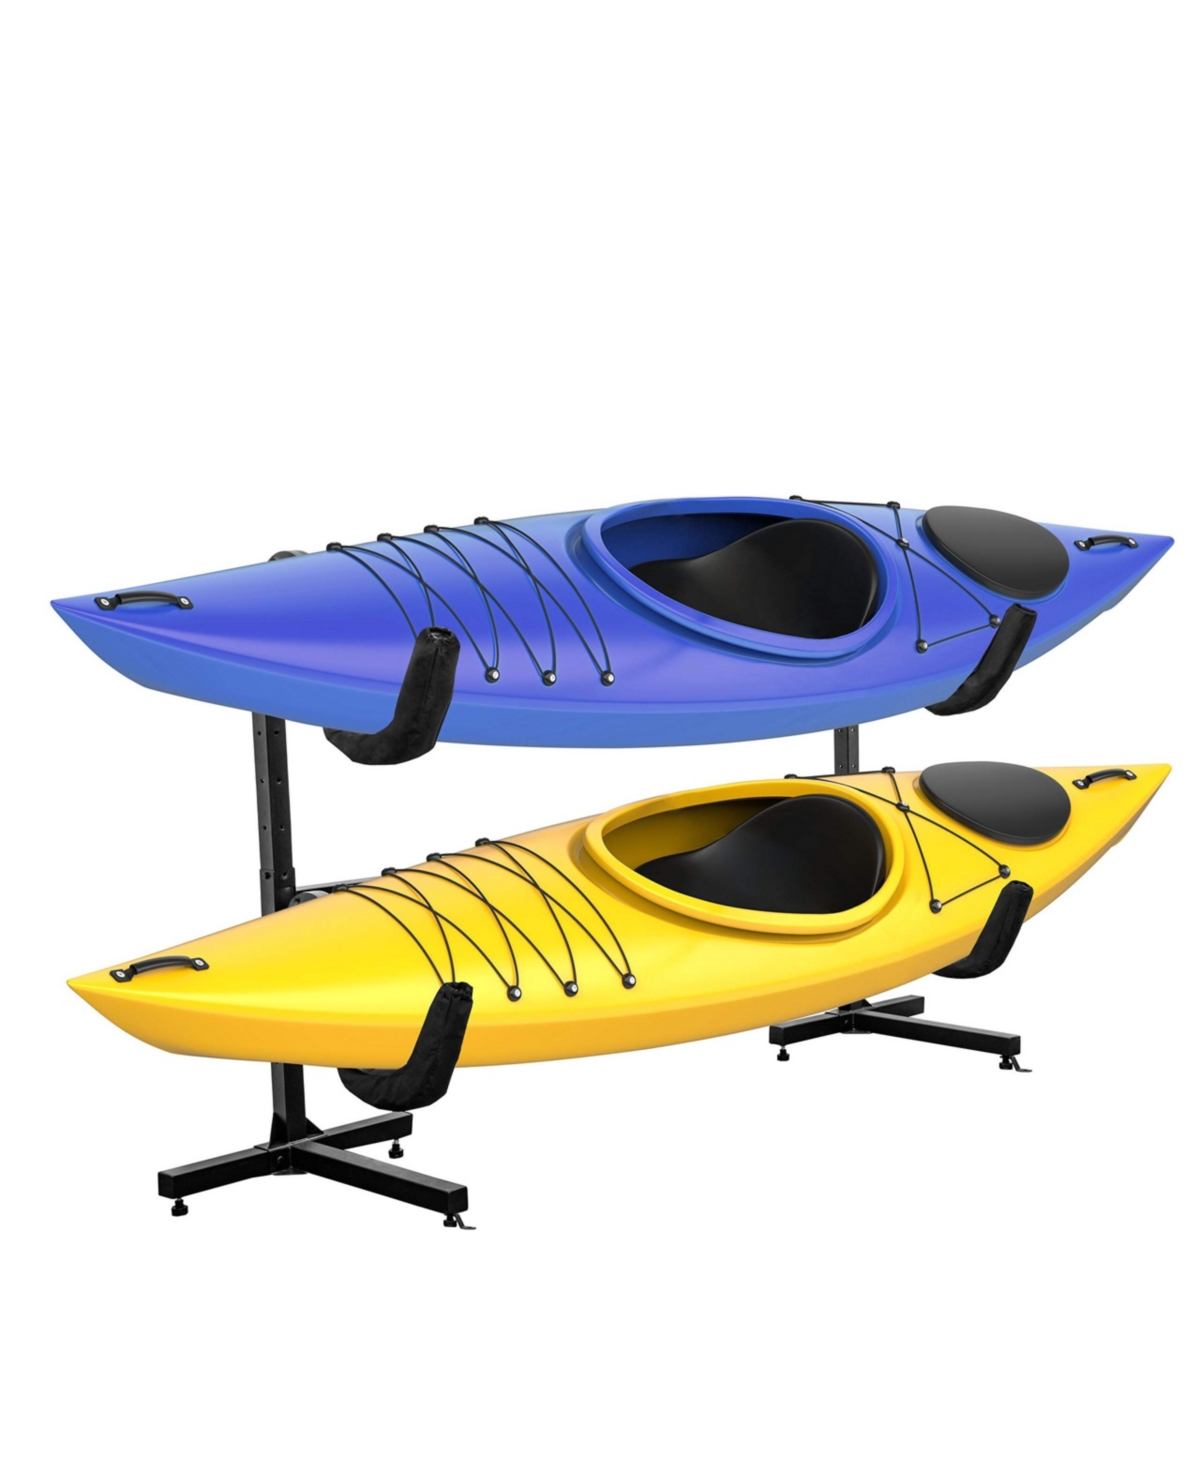 Kayak Storage Rack, Indoor & Outdoor Freestanding Storage for 2 - Black